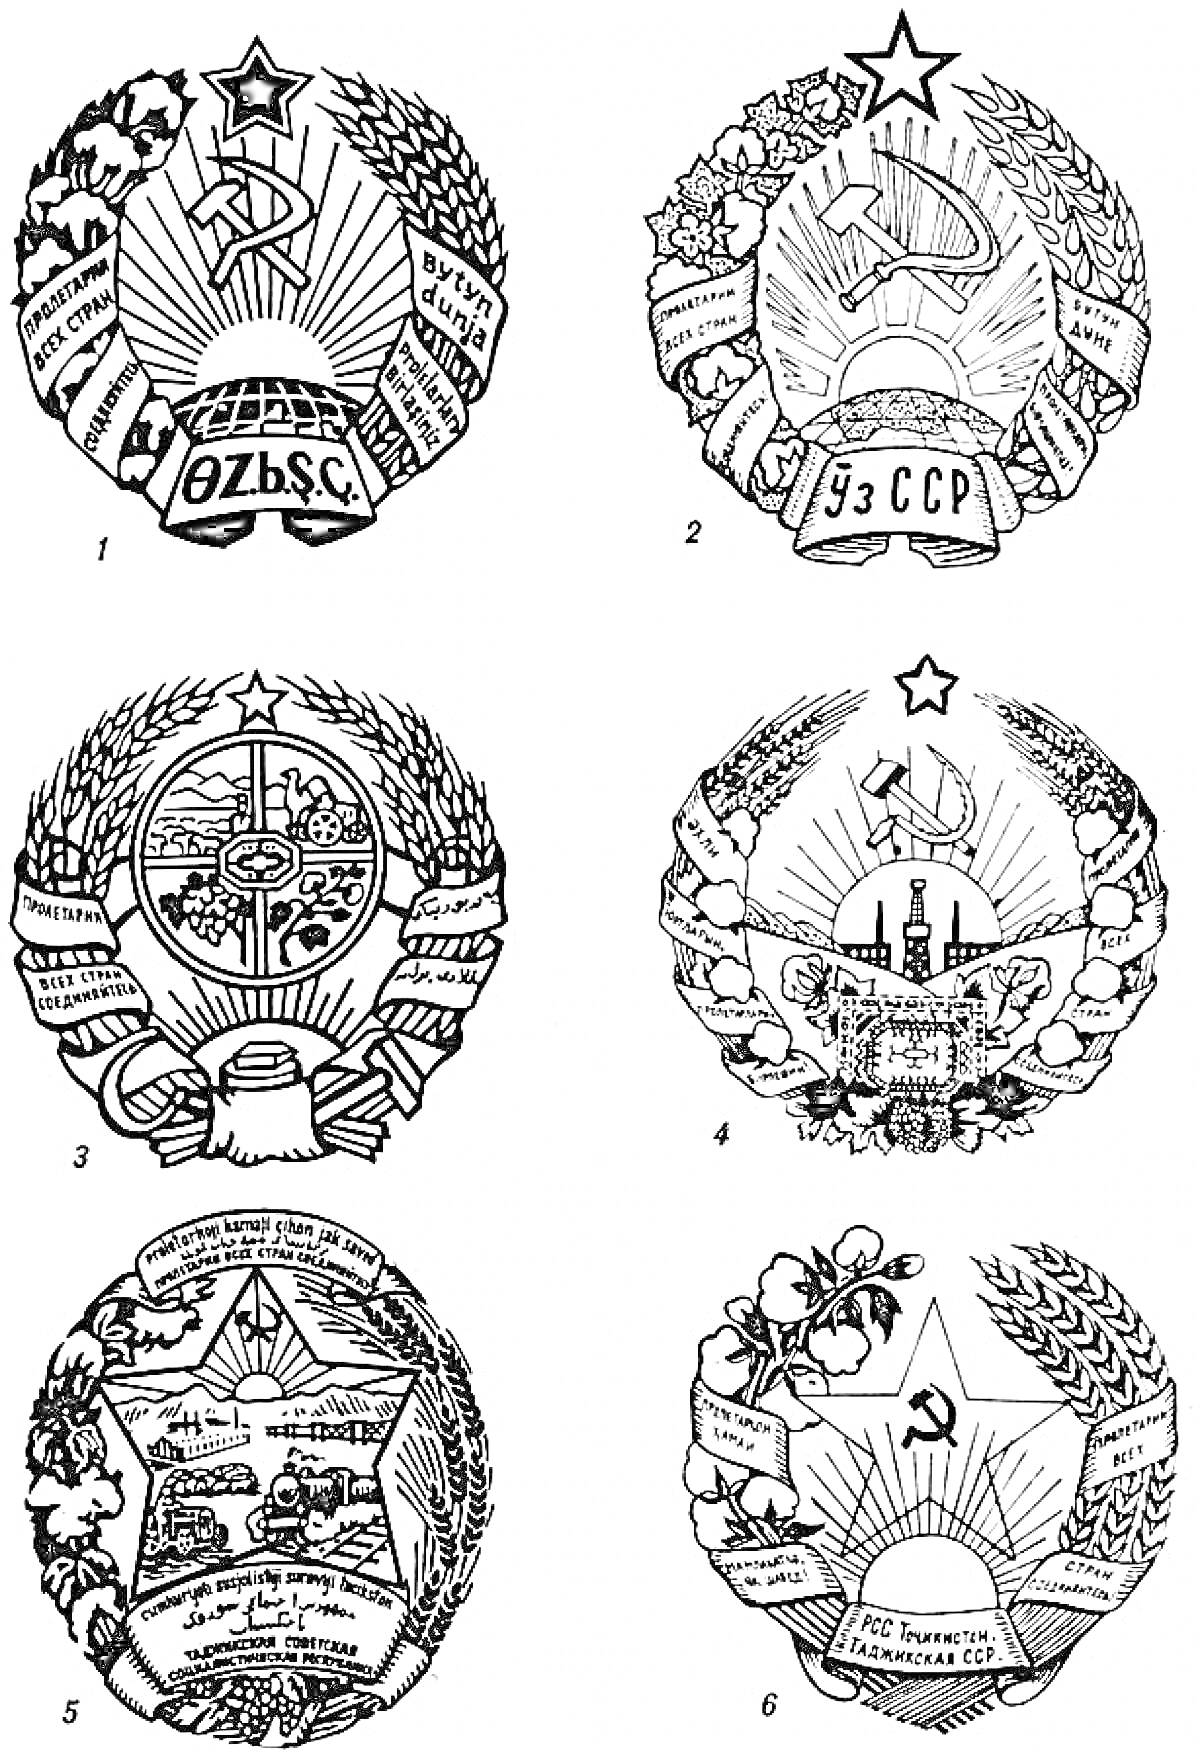 Гербы советских республик с серпом и молотом, звездами, и колосьями